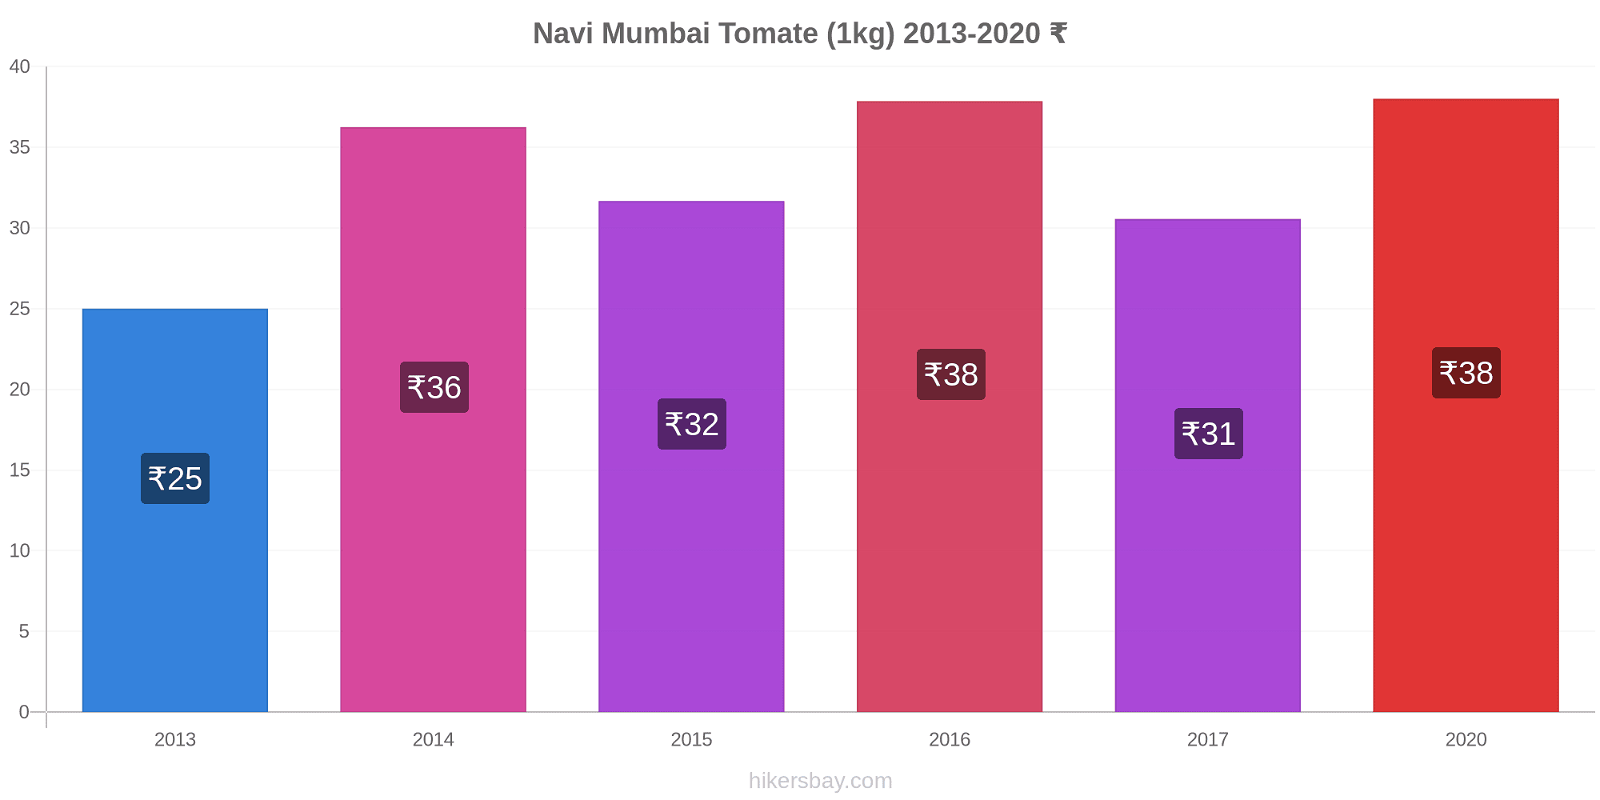 Navi Mumbai cambios de precios Tomate (1kg) hikersbay.com